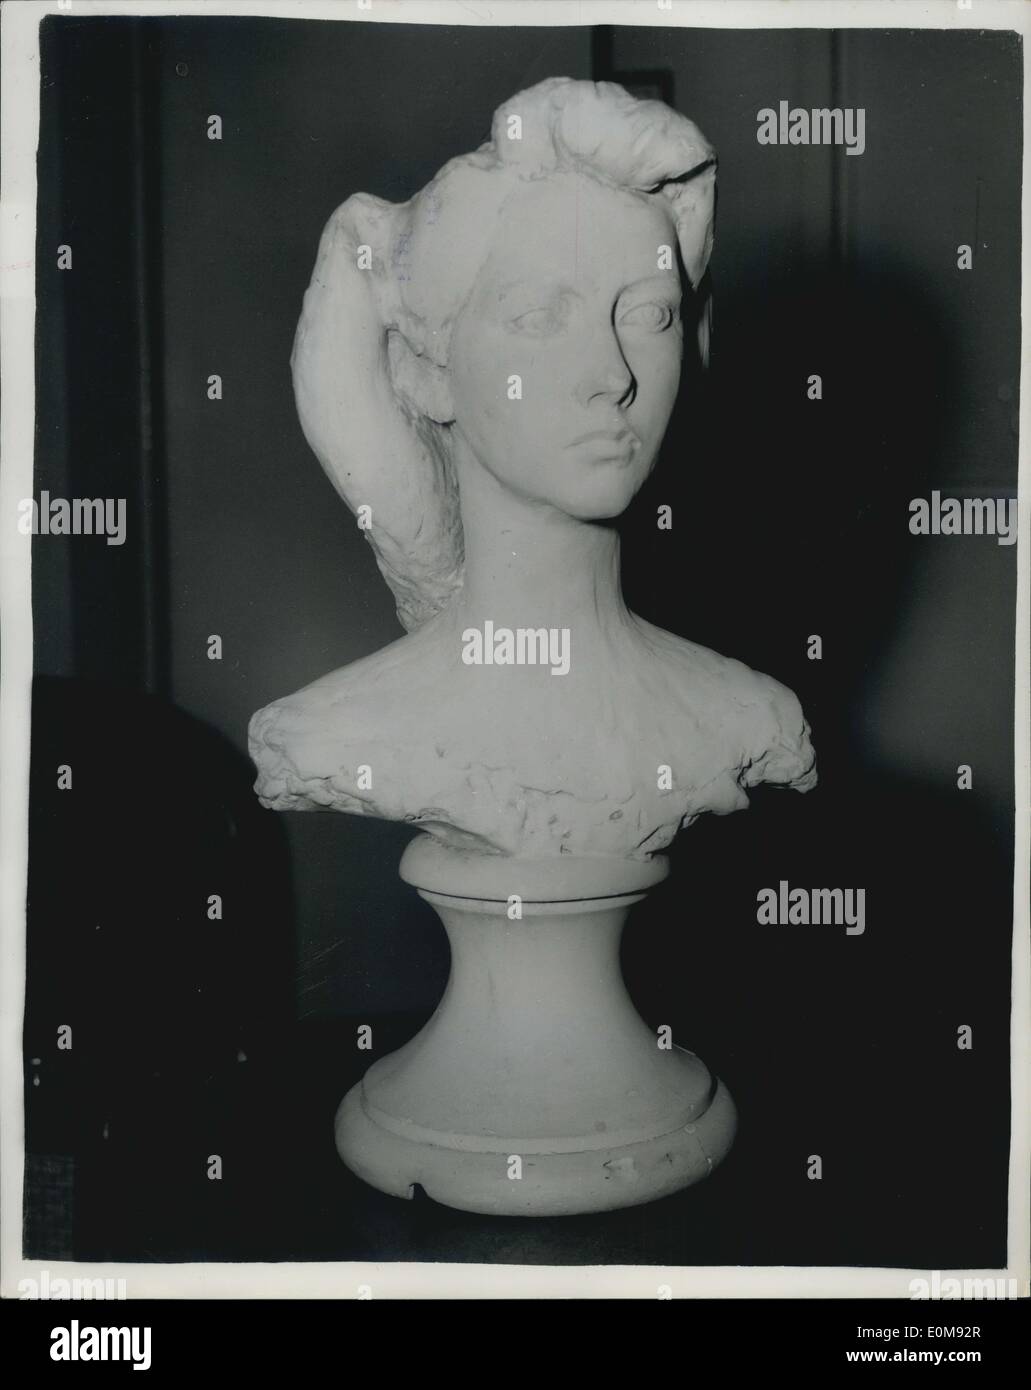 11 févr., 1954 - Cast ''The Queen'' a été retiré : Un plâtre d'une tête et des épaules de la jeune fille, d'être utilisé à des fins d'affichage Banque D'Images